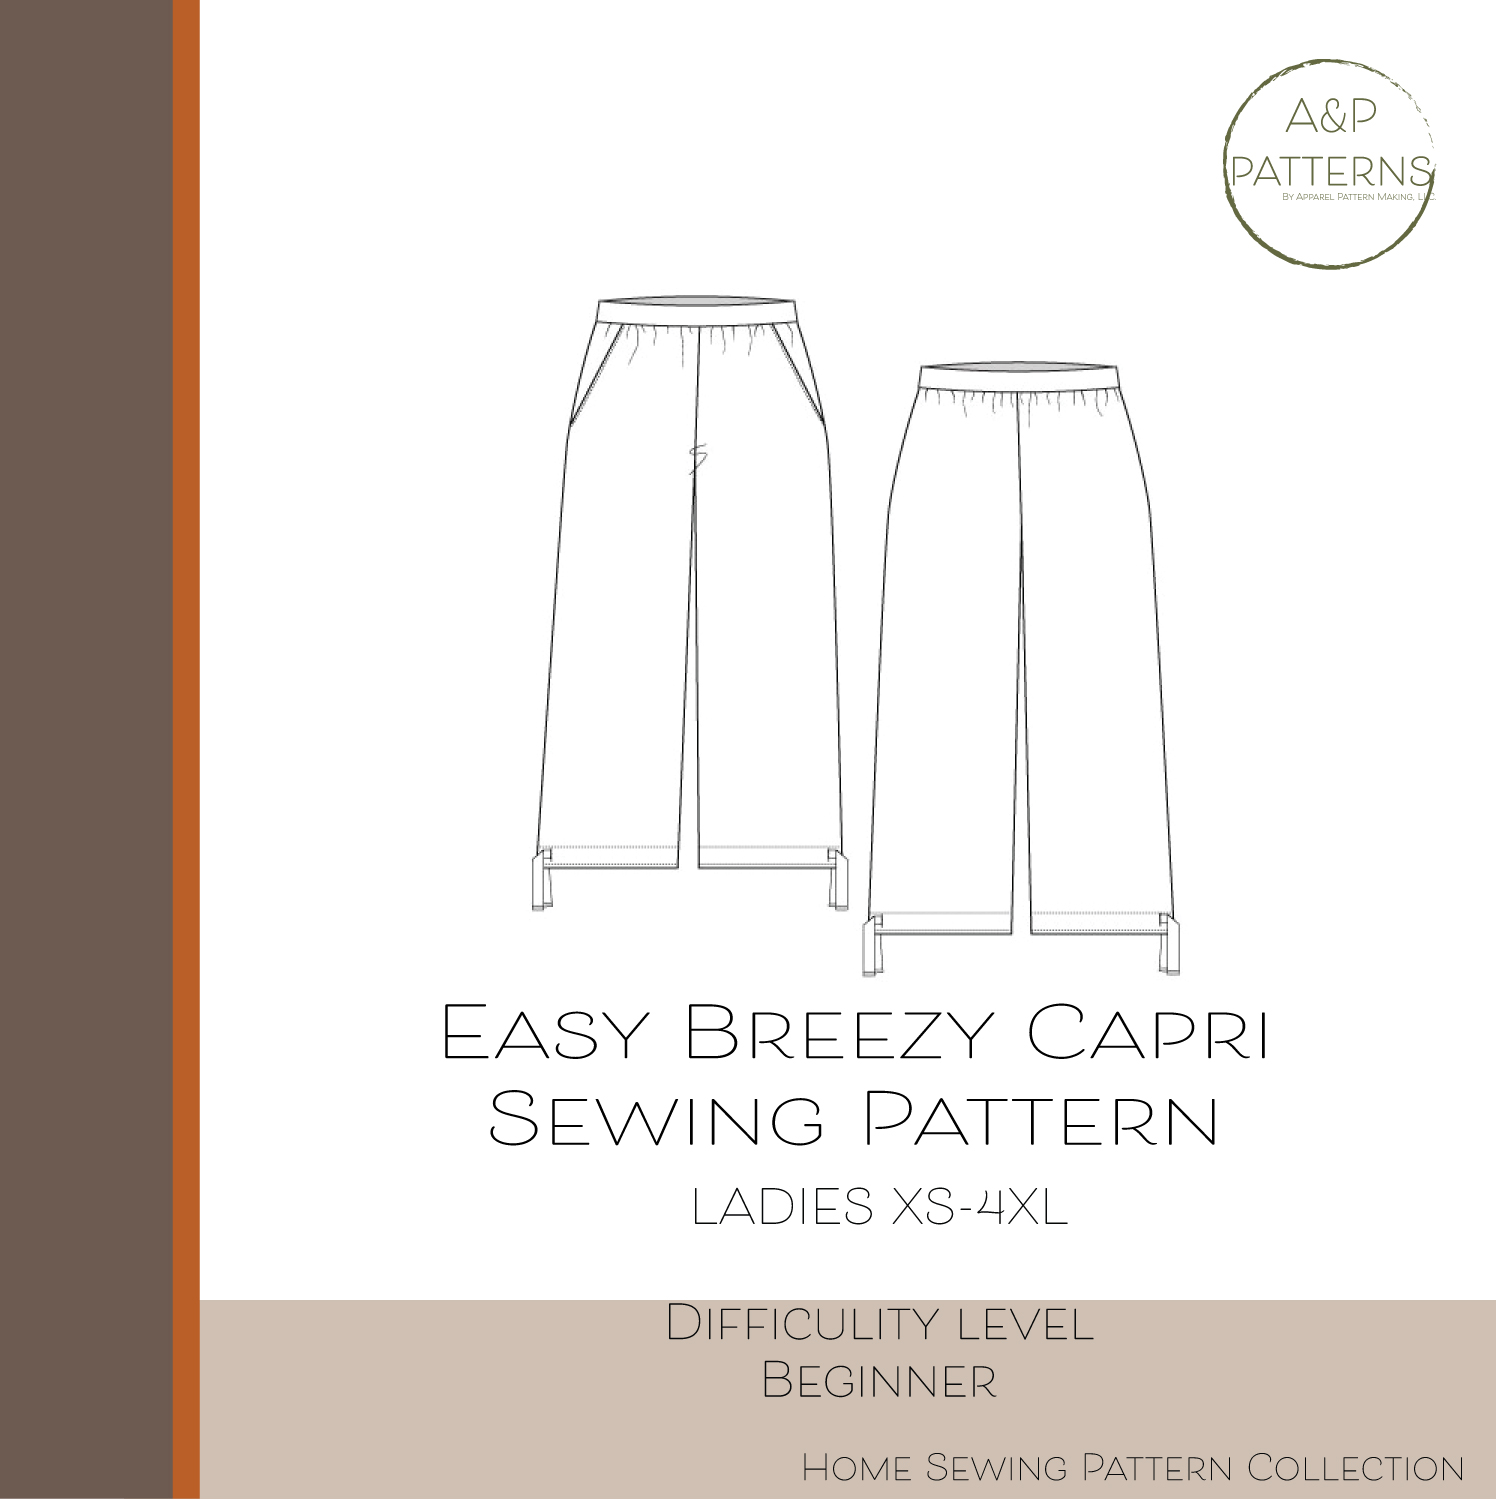 Easy Breezy Capri Sewing Pattern